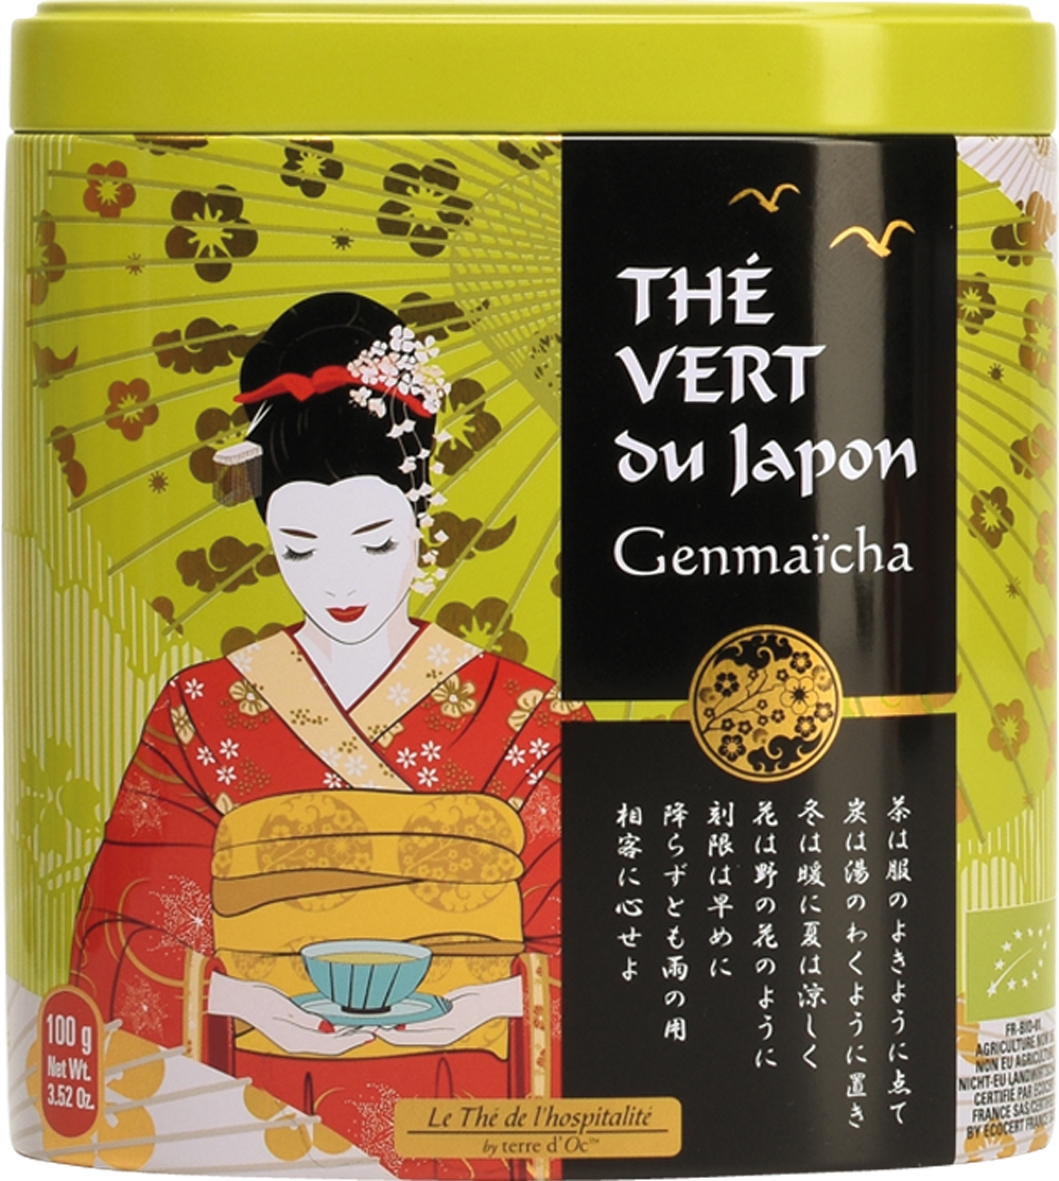 Grüner Tee "Genmaicha" nach Japanischer Art - Bio